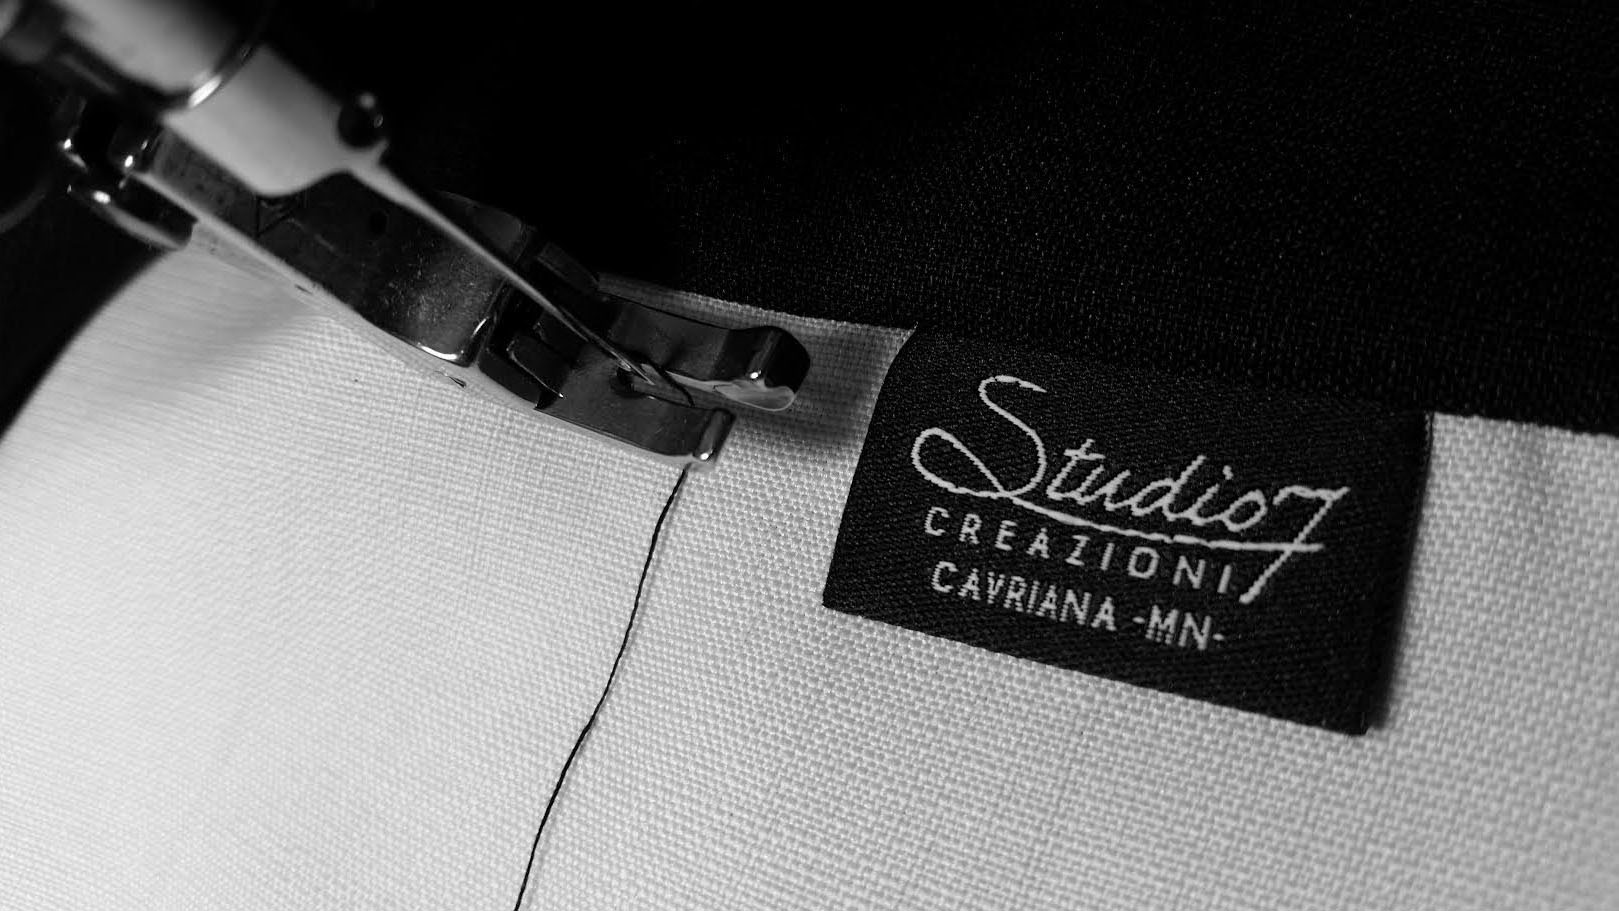 Studio7Creazioni - Fashion in Professional